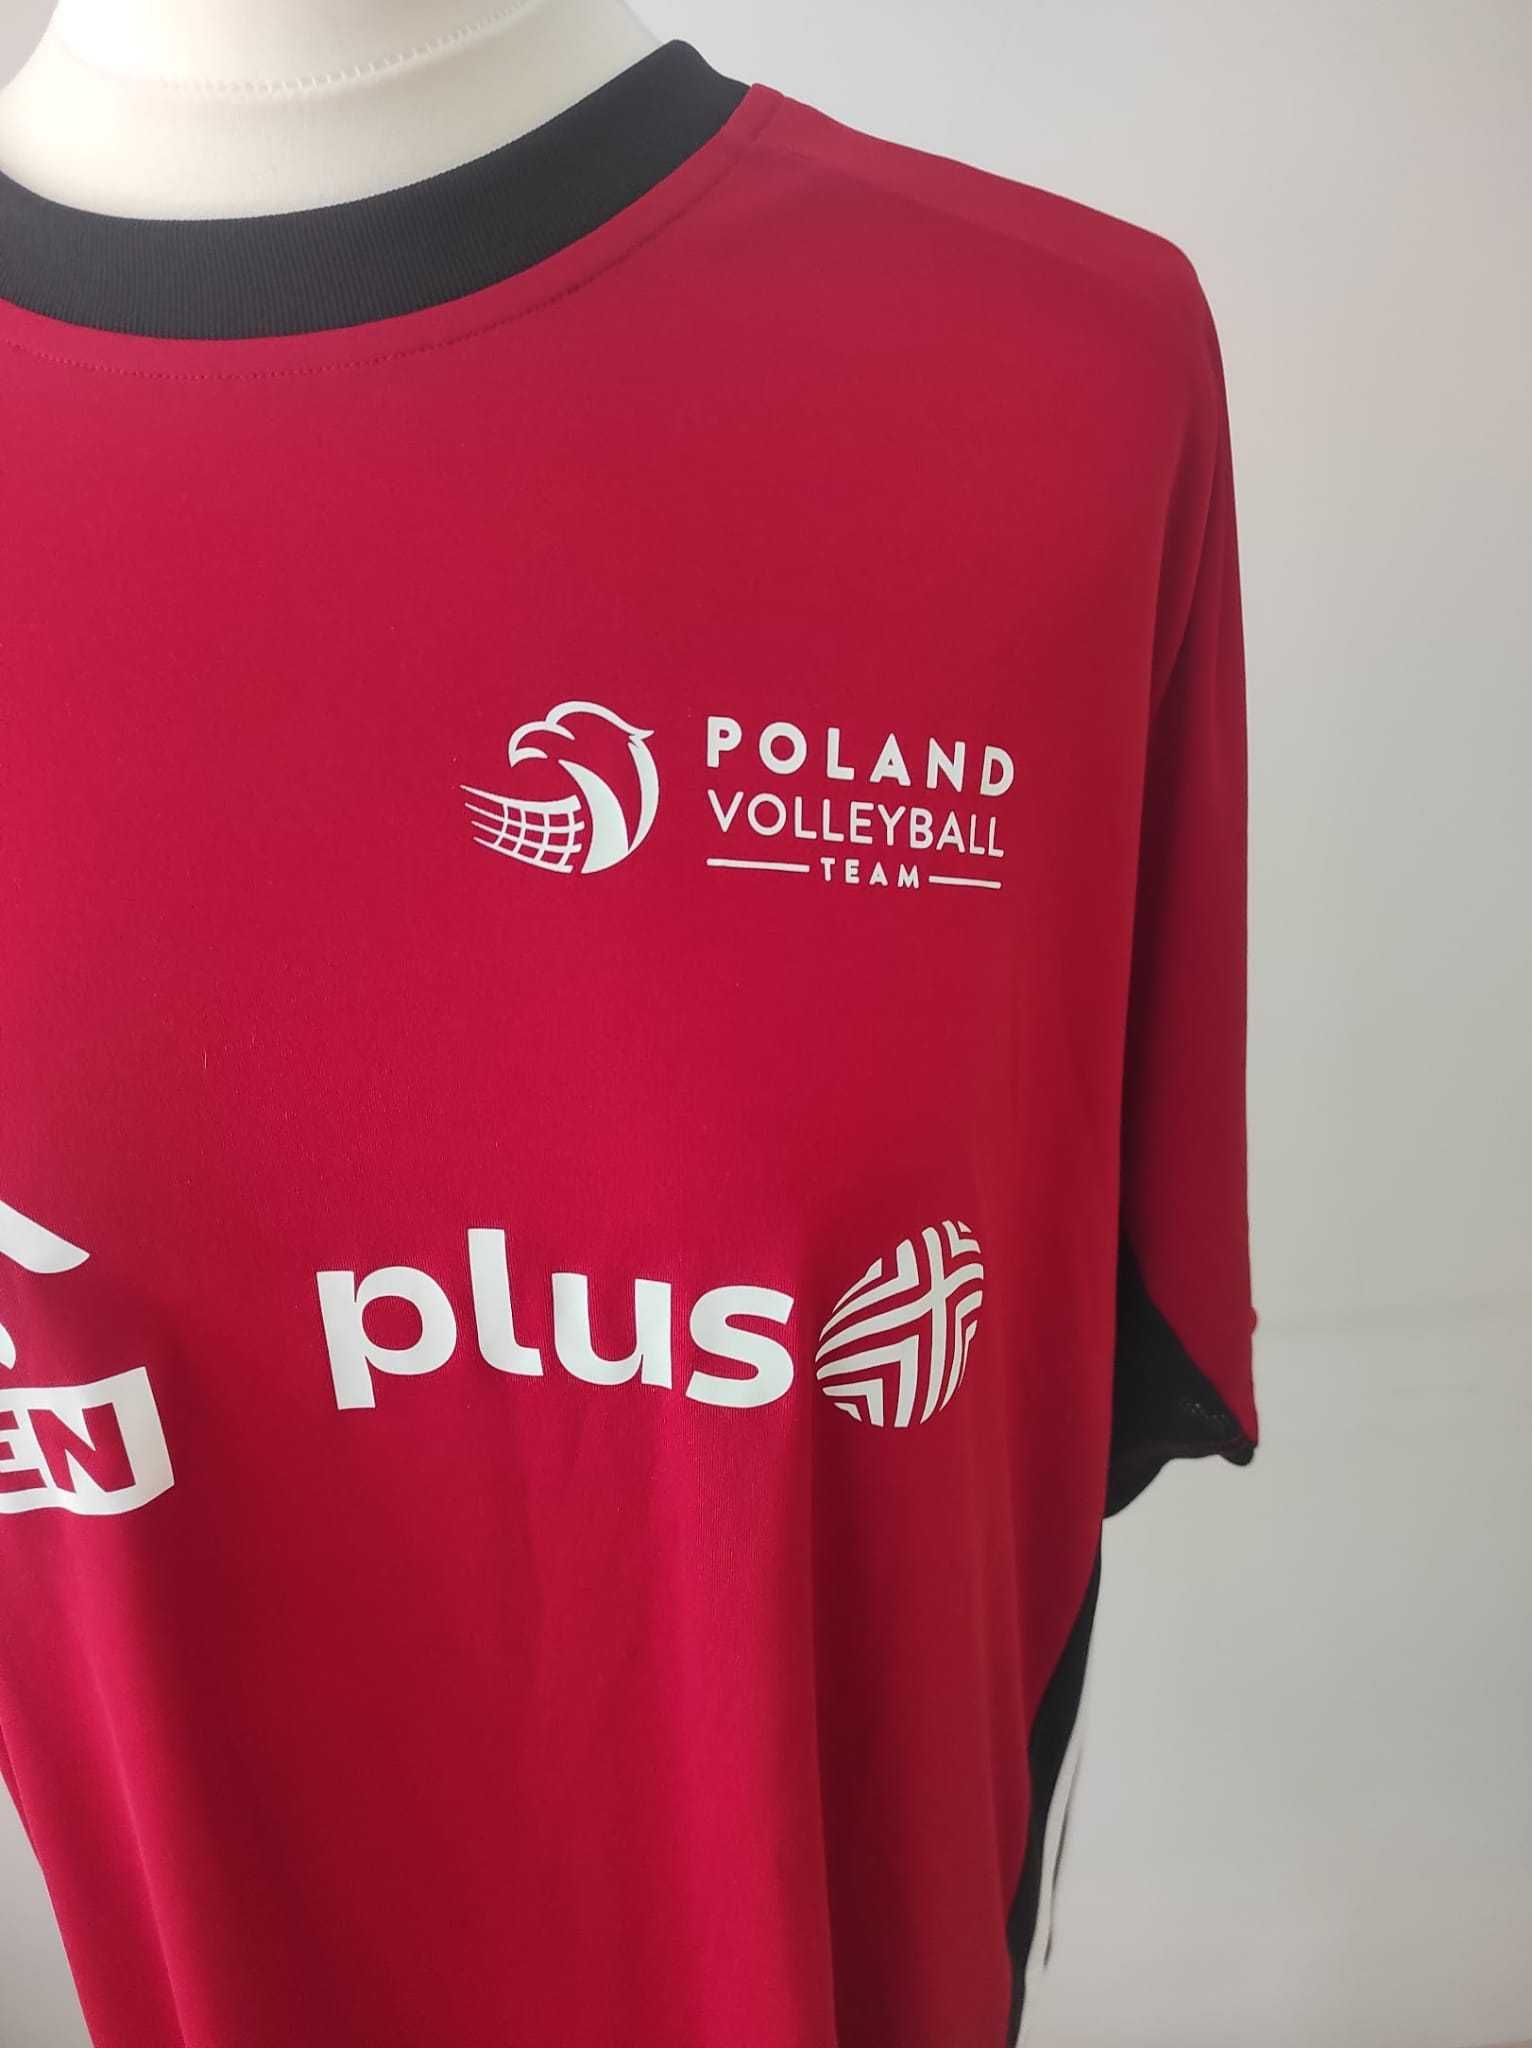 Koszulka Adidas, reprezentacja Polski, siatkówka, nowa